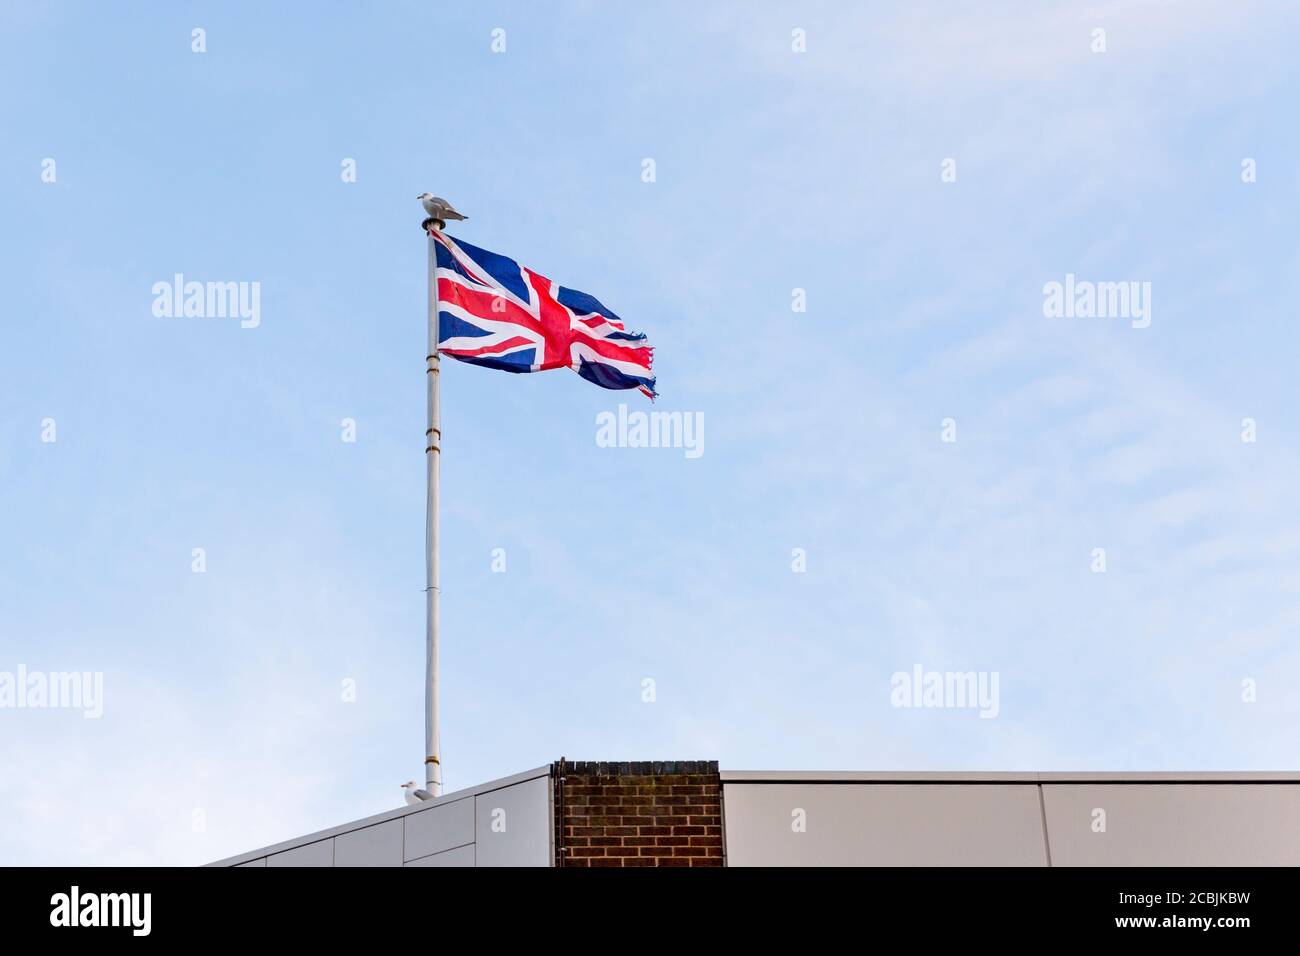 Drapeau du Royaume-Uni, drapeau d'Angleterre brodé sur le ciel bleu sur le toit d'un bâtiment. Banque D'Images